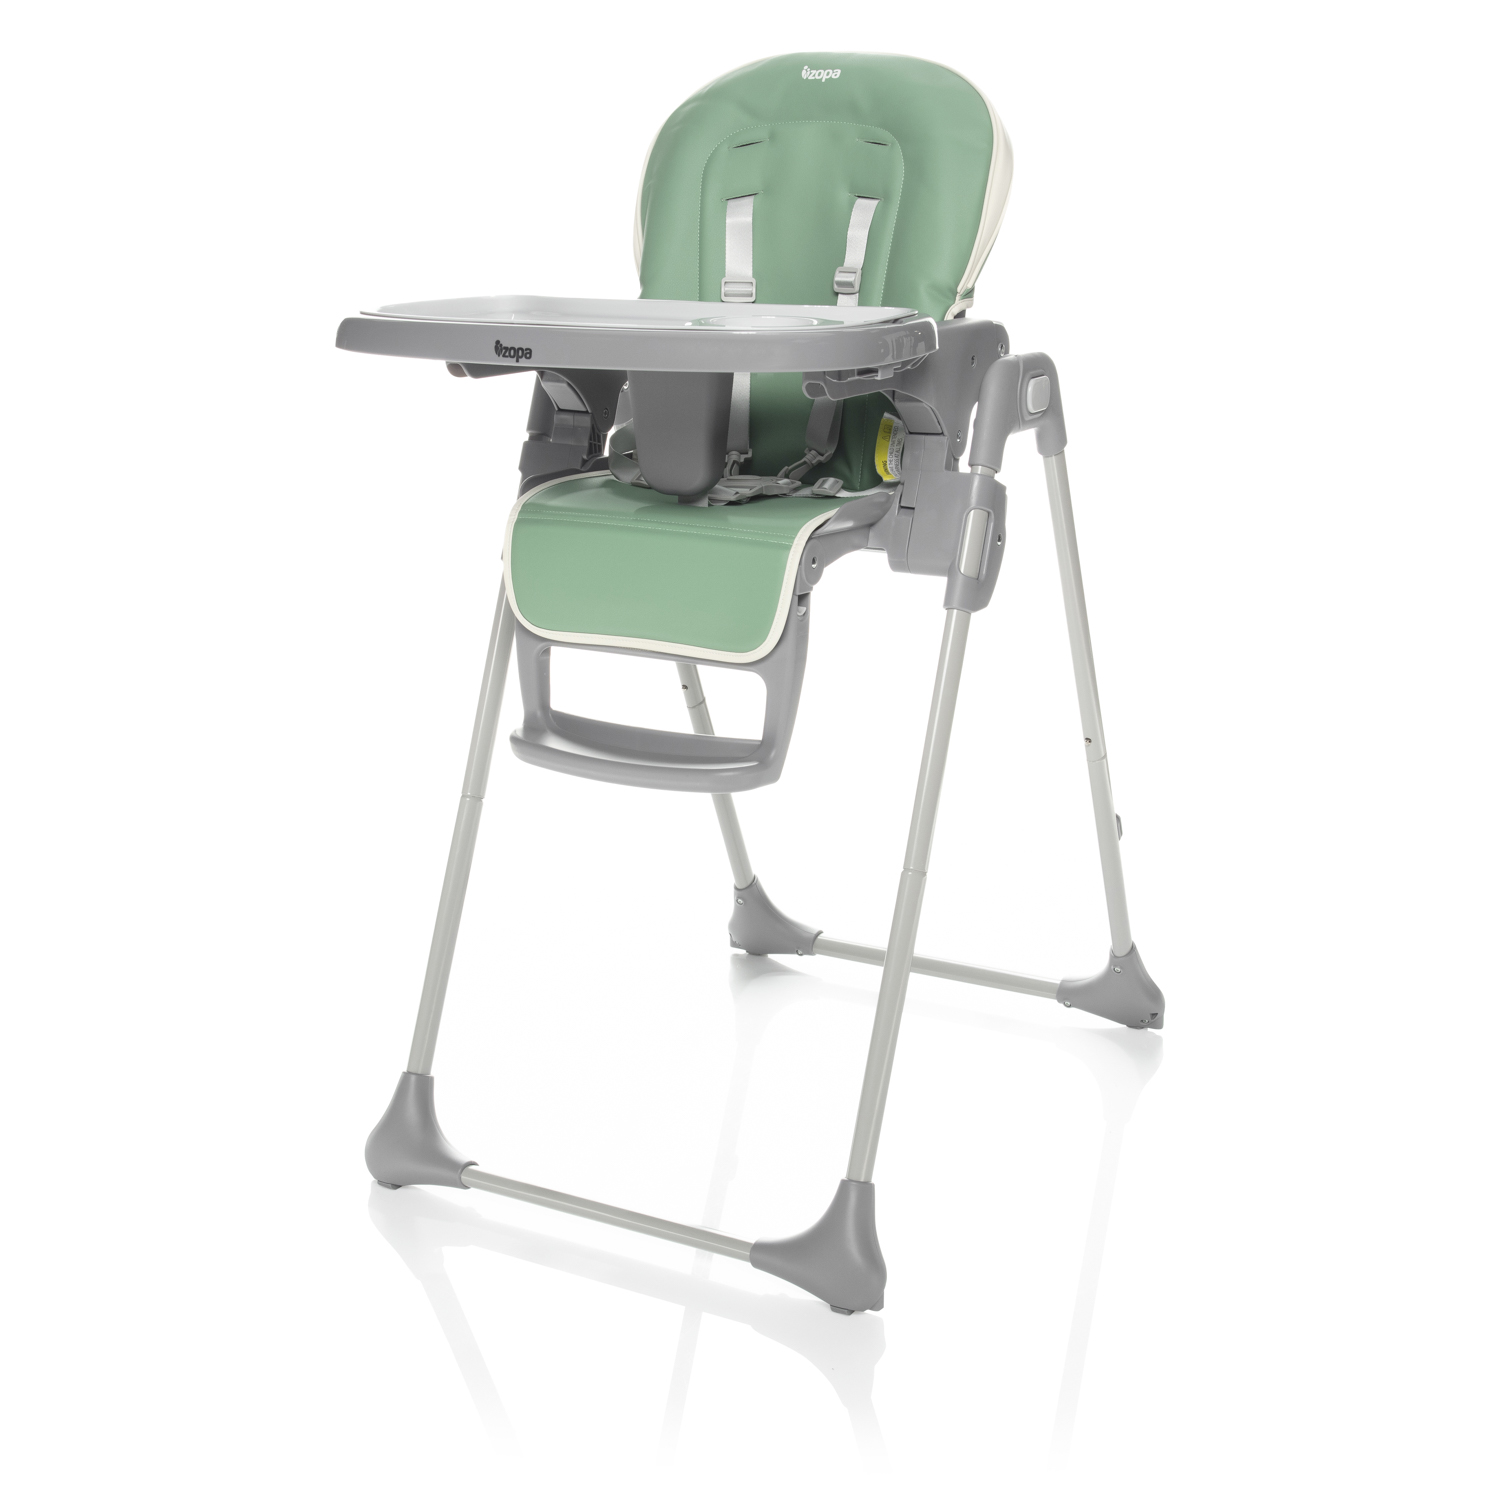 Detská stolička Pocket, Misty Green